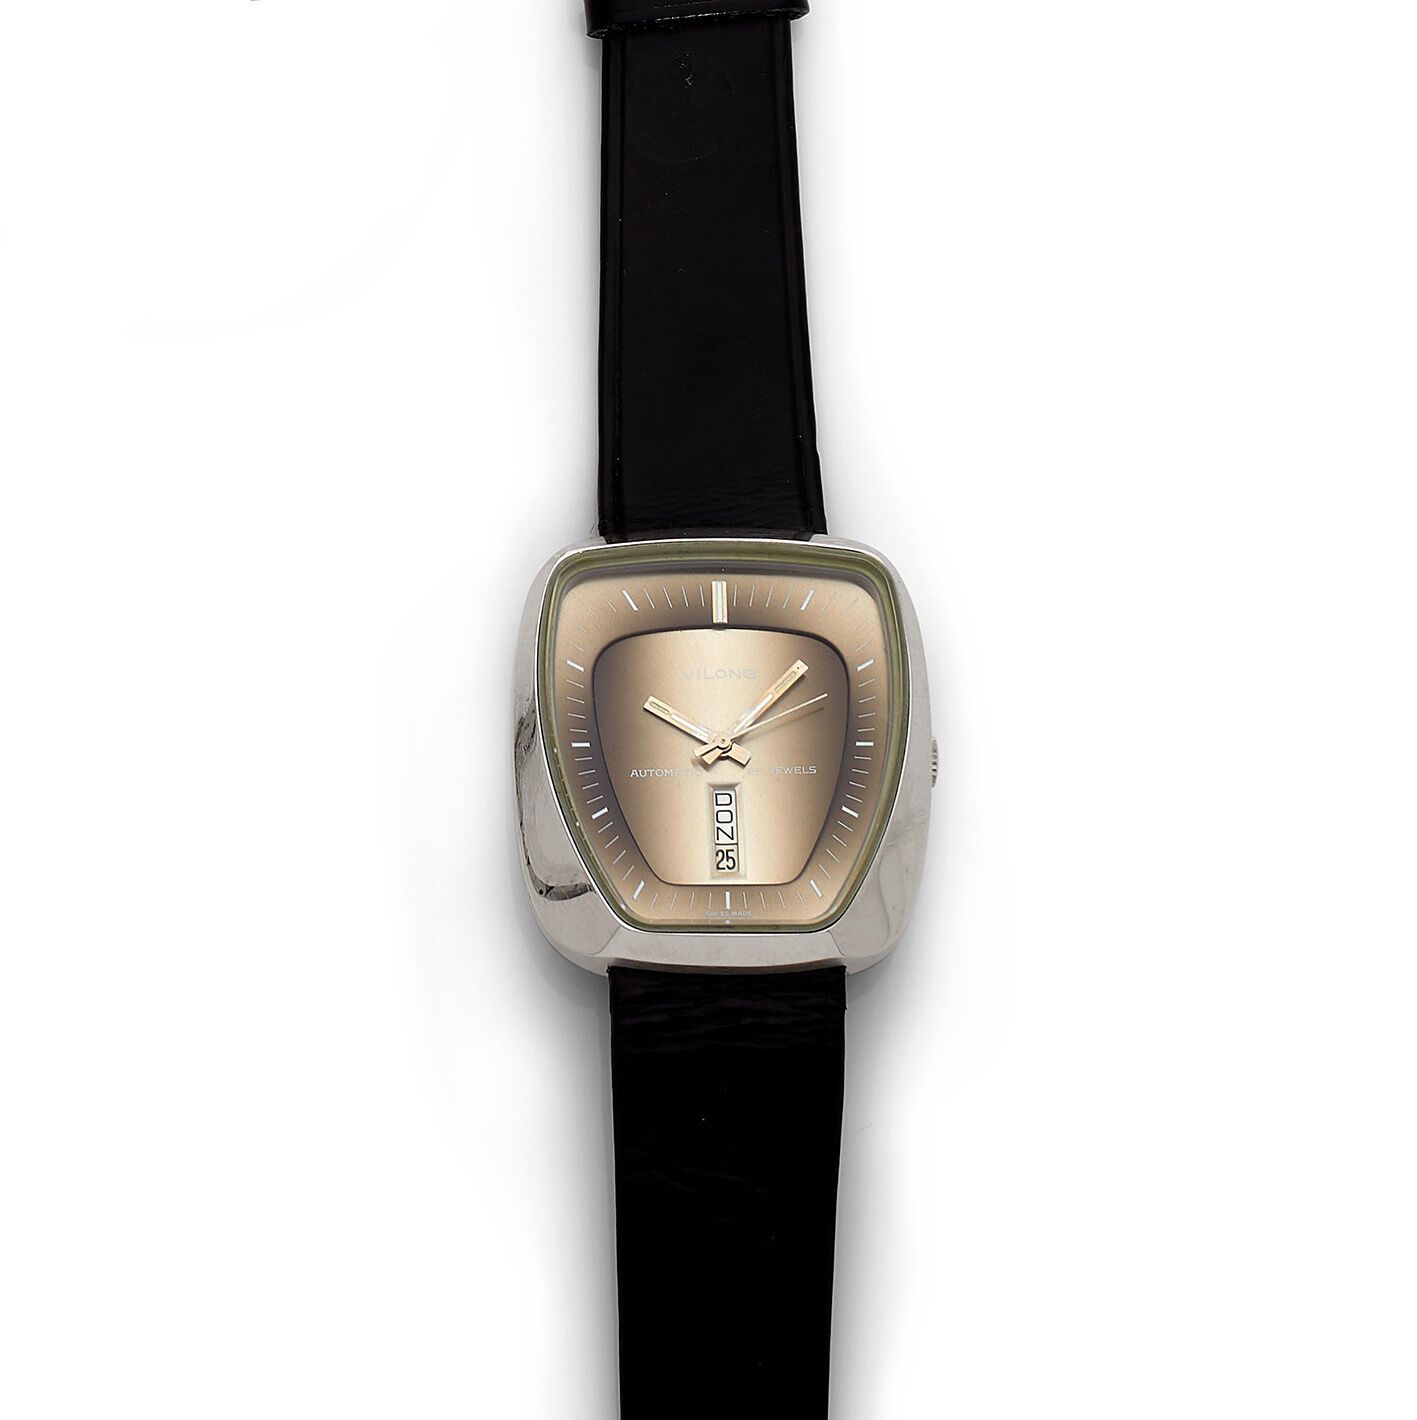 VILONG VILONG
Reloj de pulsera de caballero de acero inoxidable y metal, circa 1&hellip;